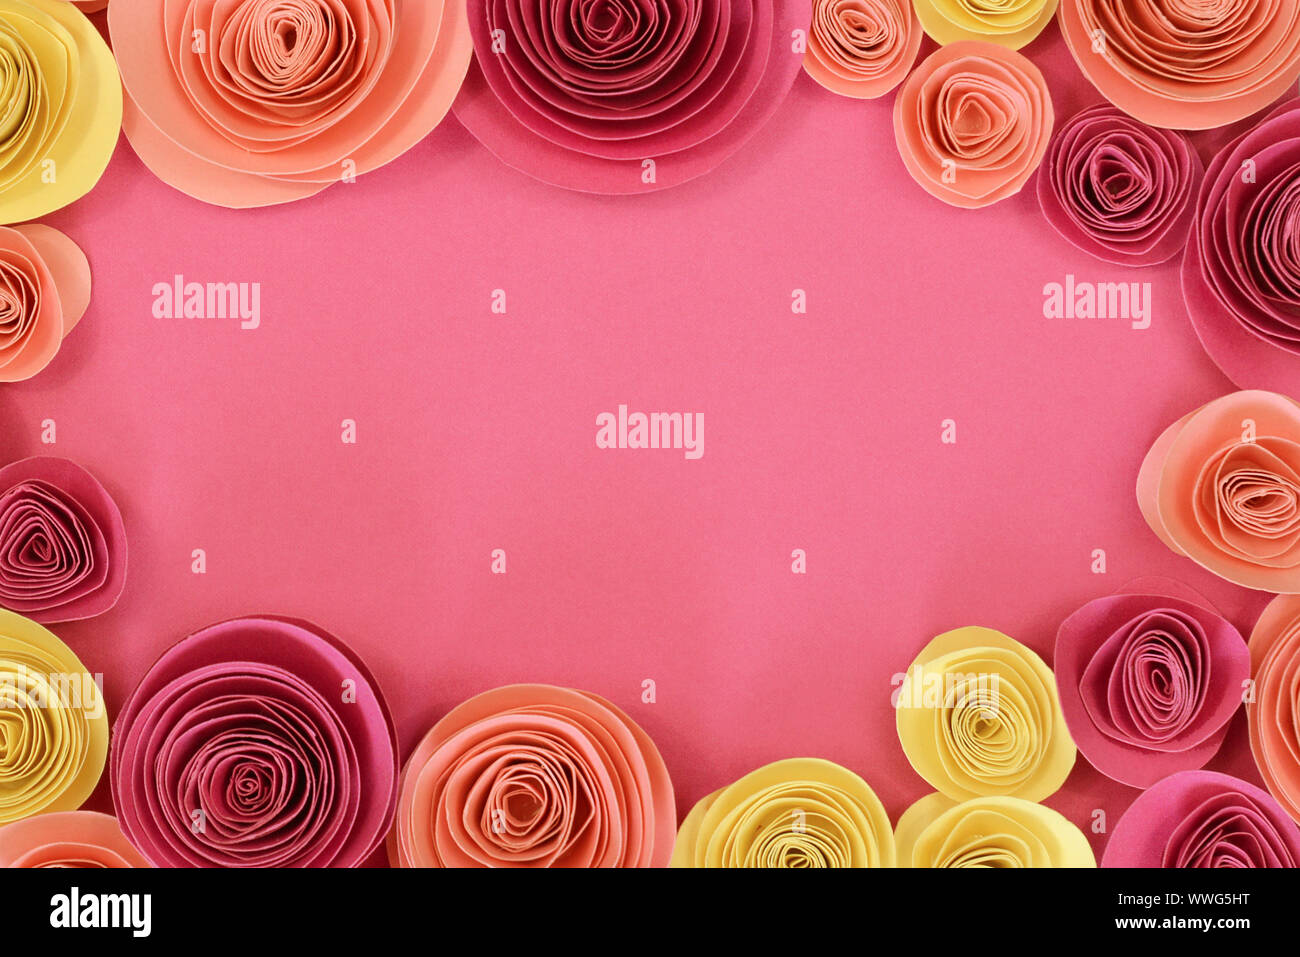 Rosa pastello, magenta e giallo rose di carta piana sfondo laici con i fiori intorno al endges e svuotare lo spazio di copia in medio Foto Stock